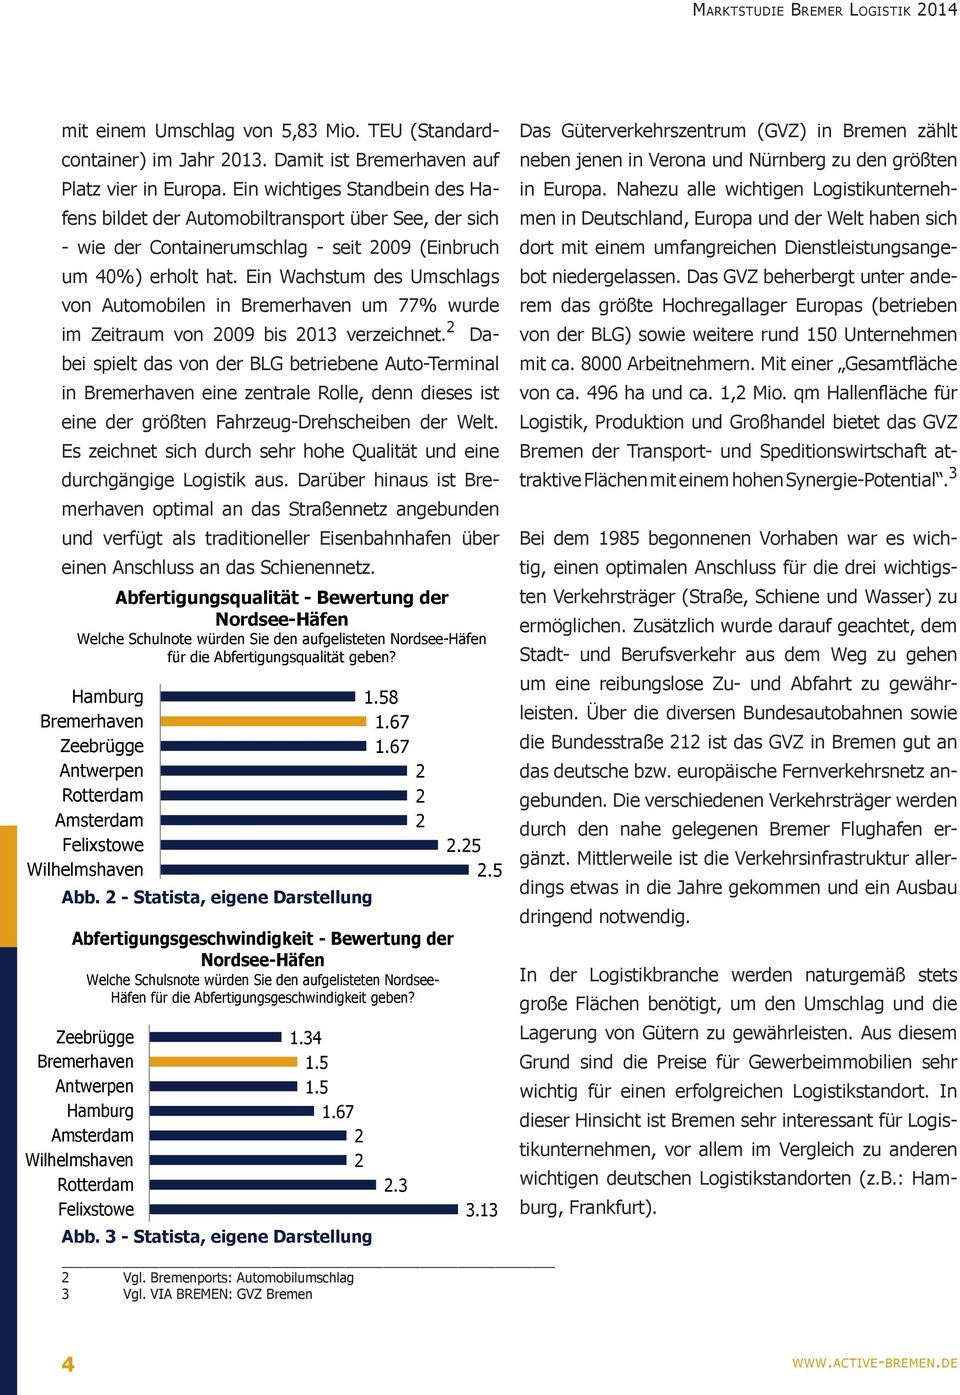 Ein Wachstum des Umschlags von Automobilen in Bremerhaven um 77% wurde im Zeitraum von 2009 bis 2013 verzeichnet.